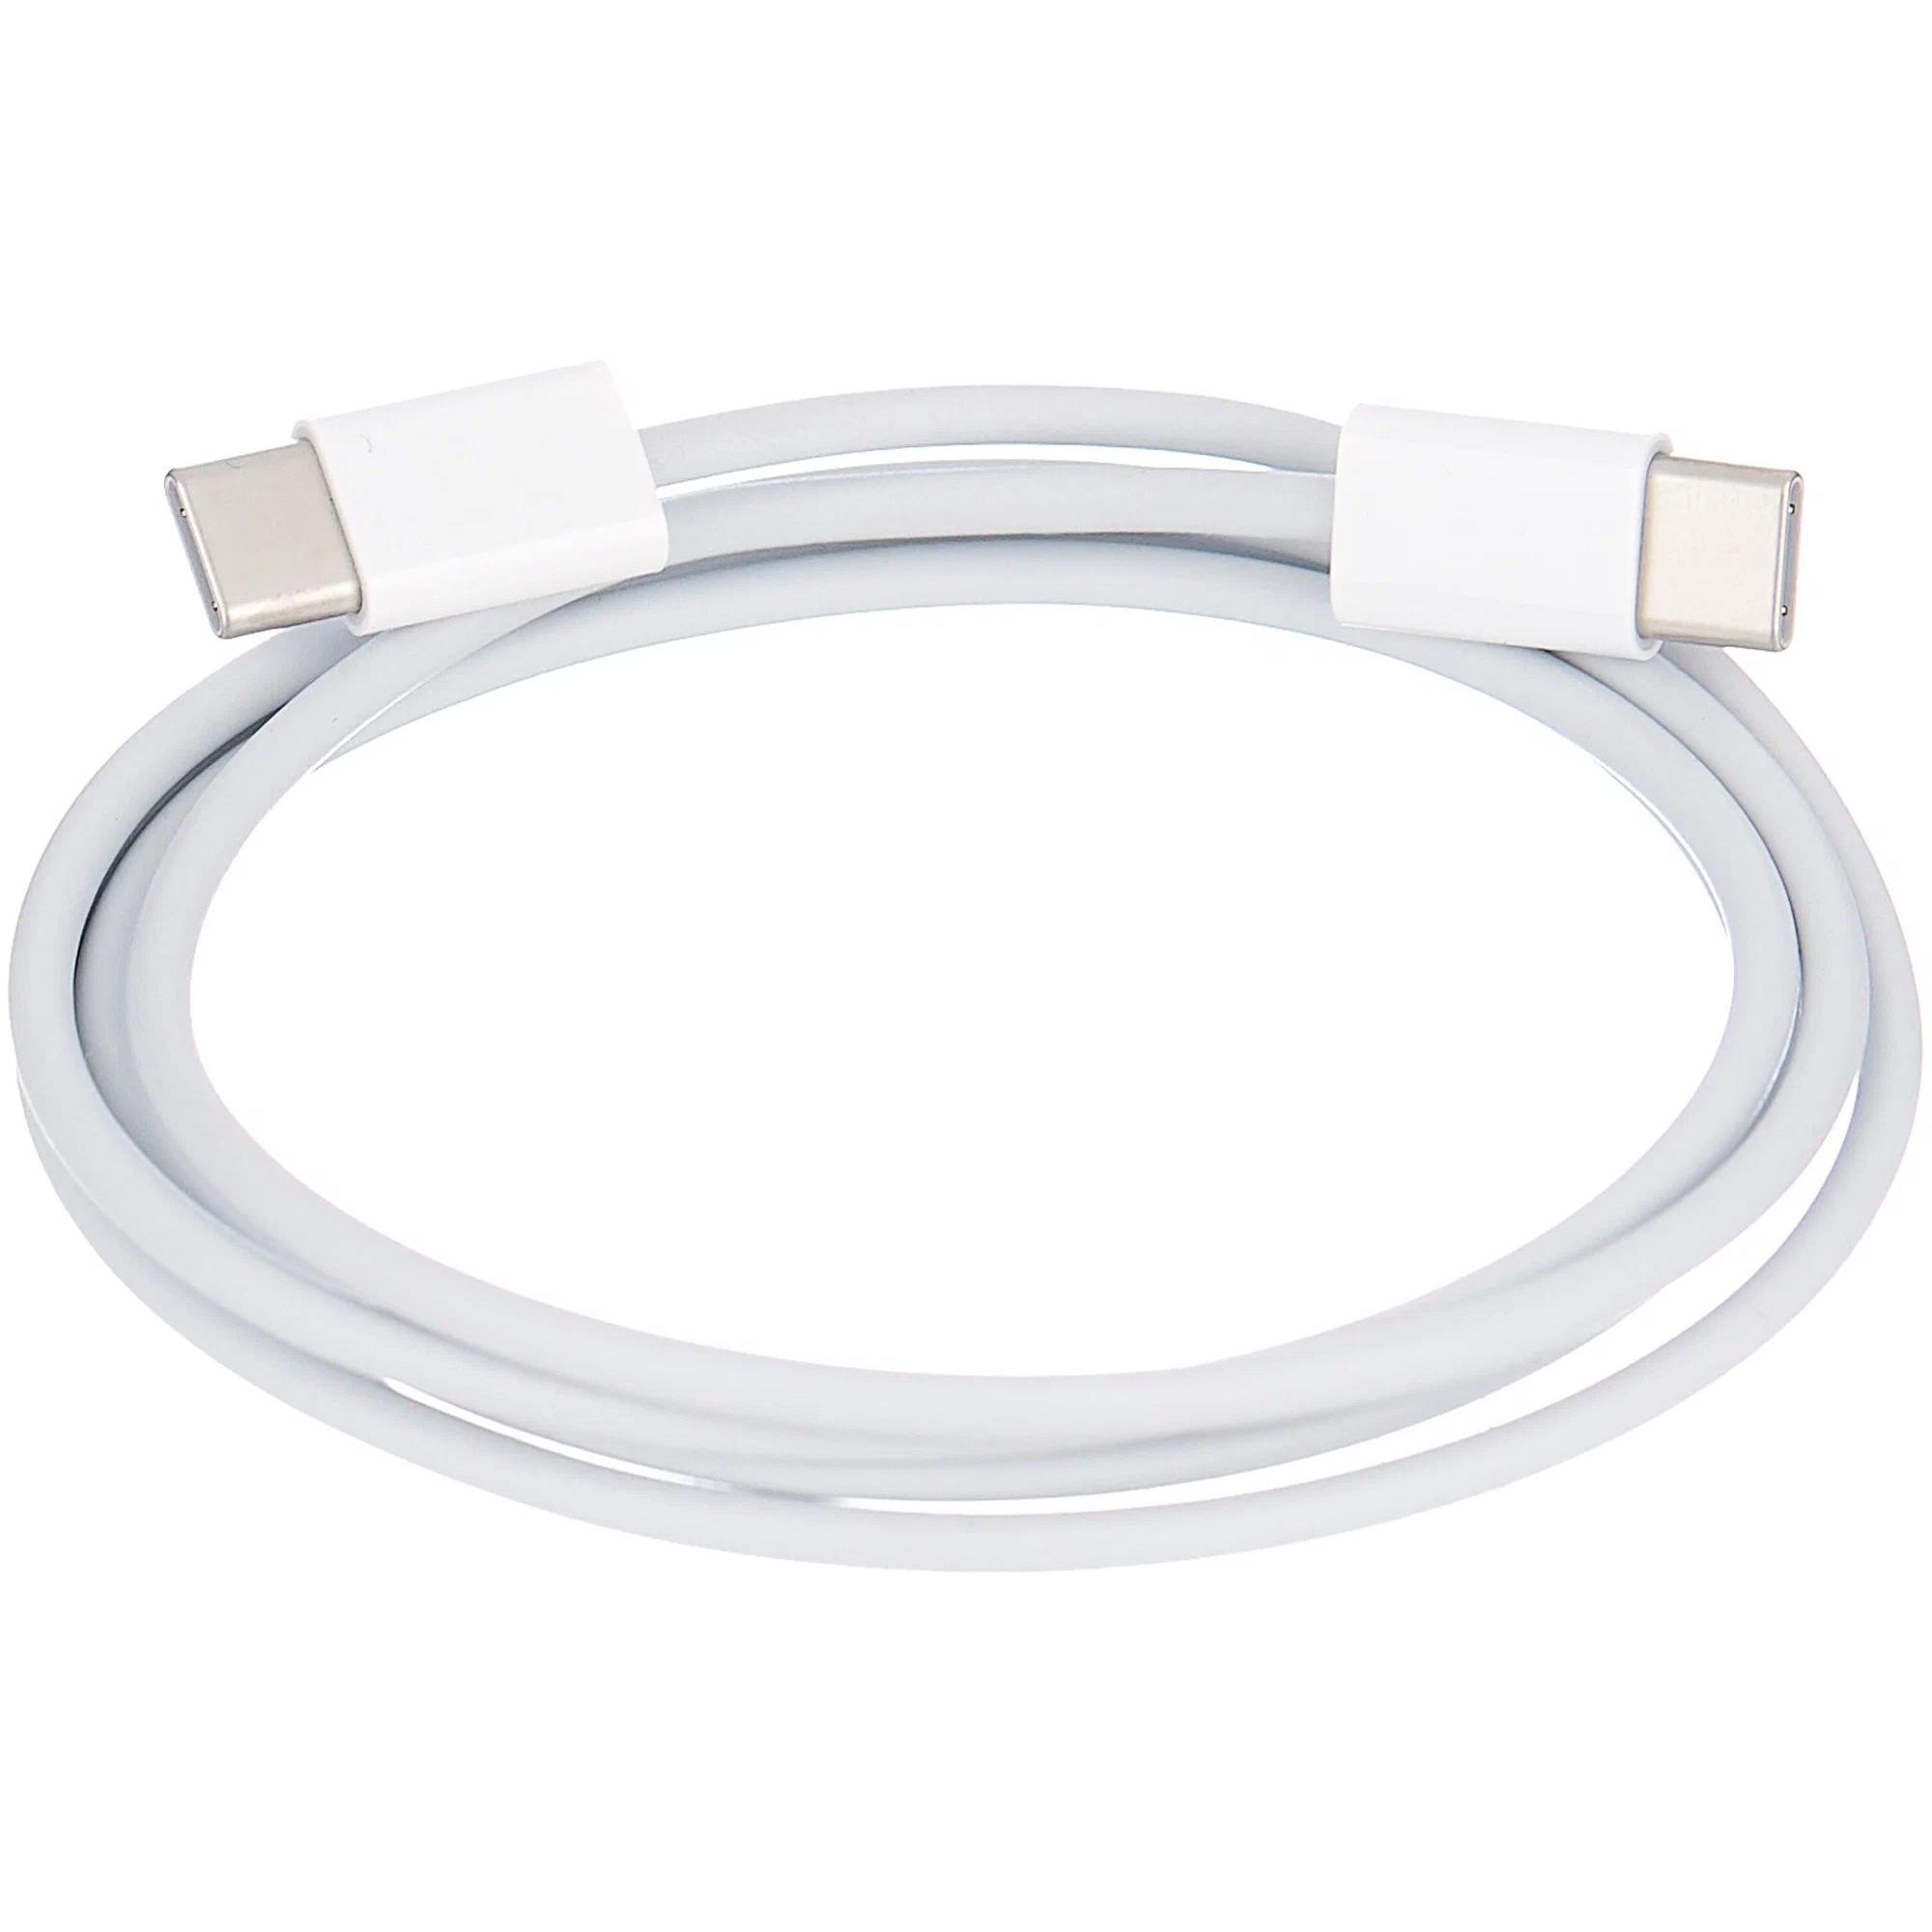 Кабель Apple USB-C Charge Cable (1m) MM093ZM/A 360 вращающийся чехол для ipad 4 3 2 9 7 дюймов планшет pu кожаный смарт стенд защитный чехол для ipad 4th gen ipad 3